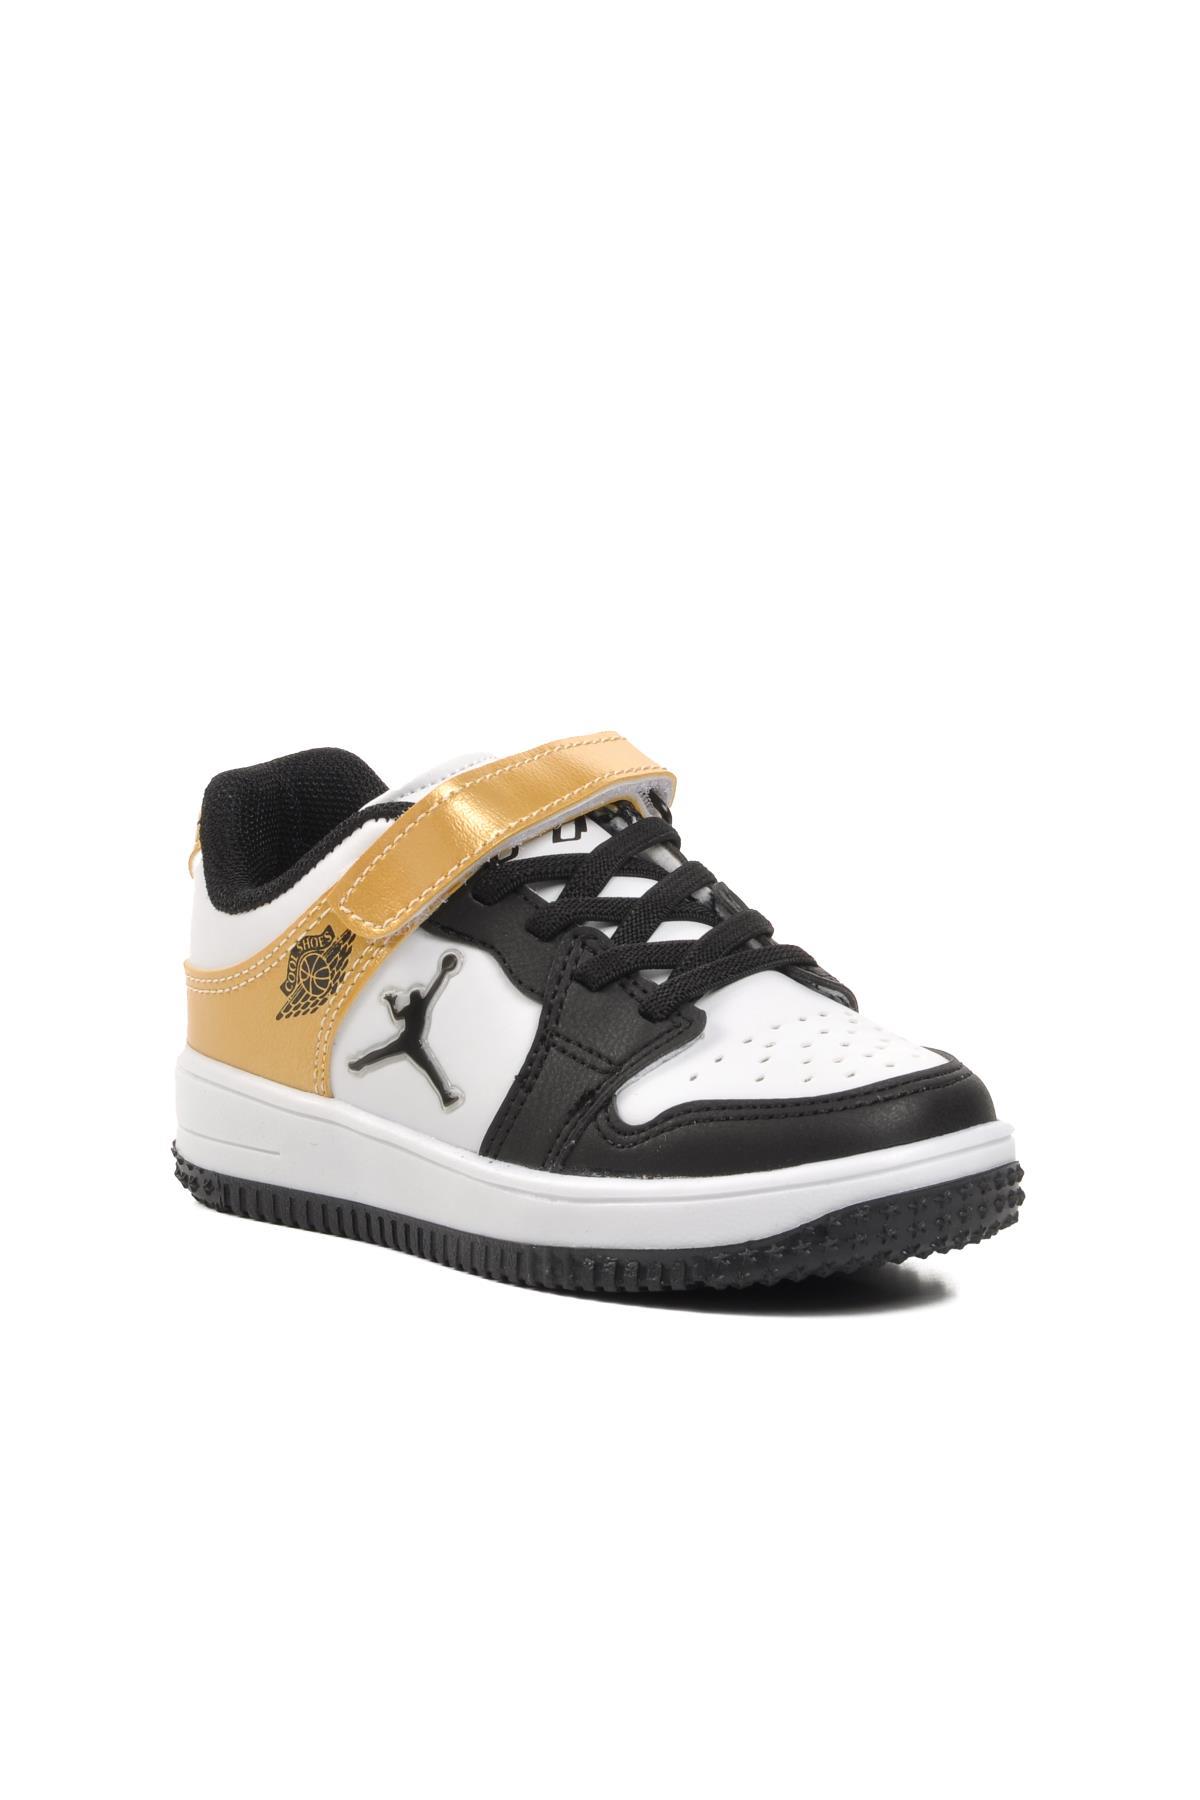 Aspor Haykat Kısa-P Gold Cırtlı Çocuk Sneaker A SPOR Çocuk Spor Ayakkabı